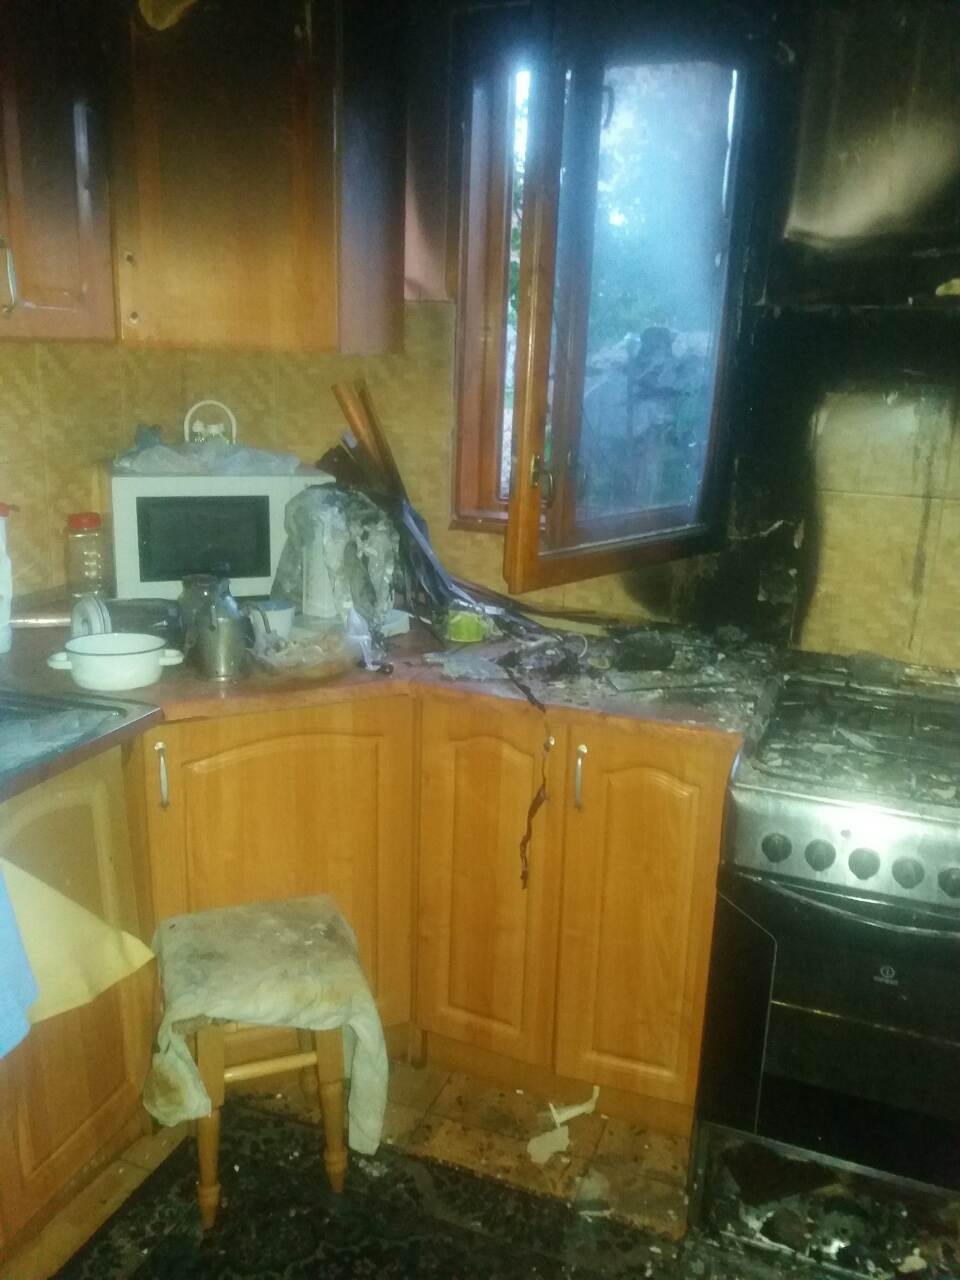 22 травня о 19:23 до Служби порятунку «101» повідомили про пожежу в приватному житловому будинку в с. Богаревиця Іршавського району. 